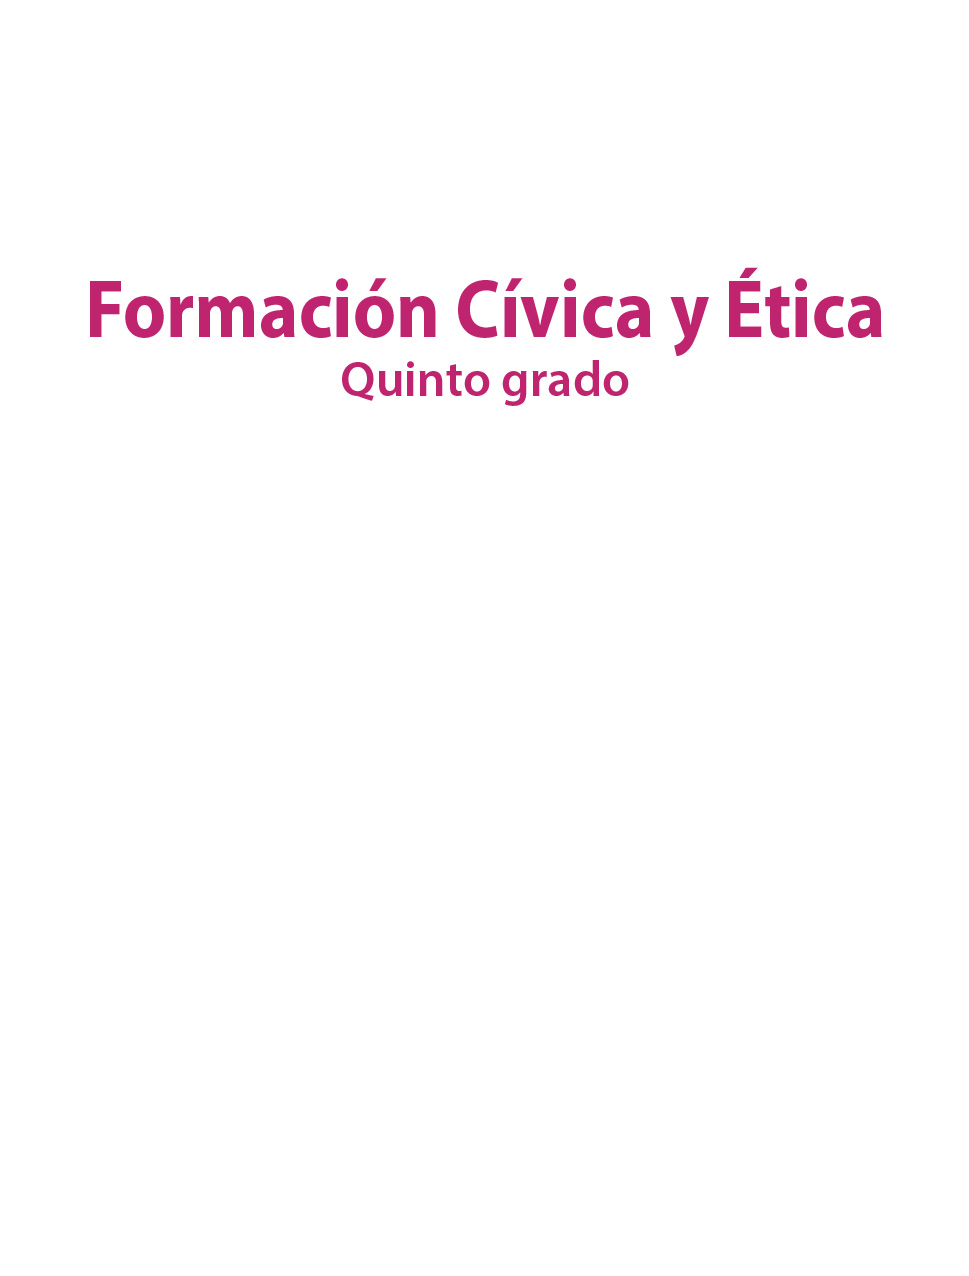 Libro De Formacion Civica Y Etica 5 Grado 2019 - Libros Favorito